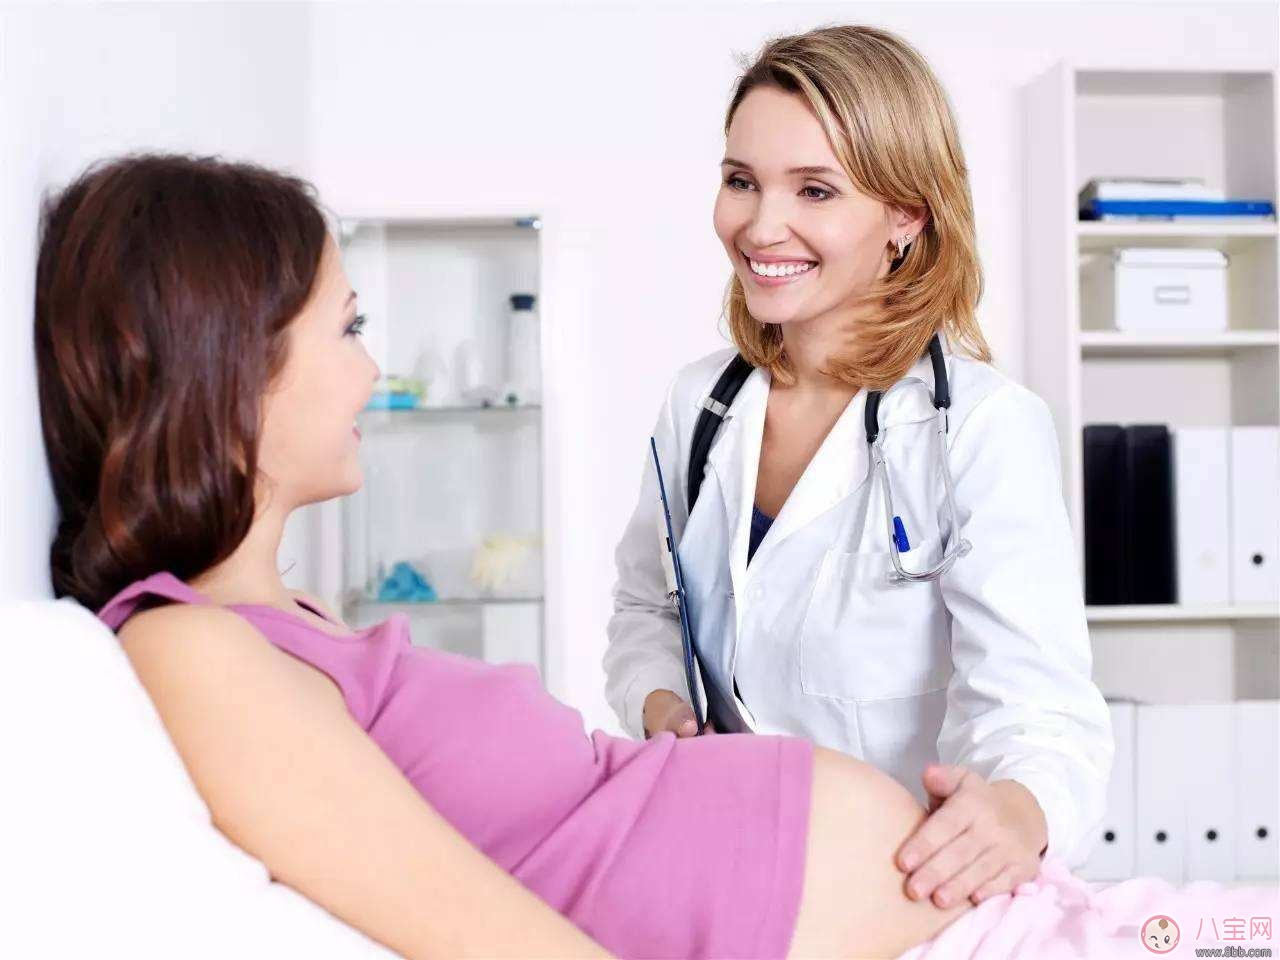 怀二胎会有妊娠并发症吗 防高危妊娠应该做哪些产检